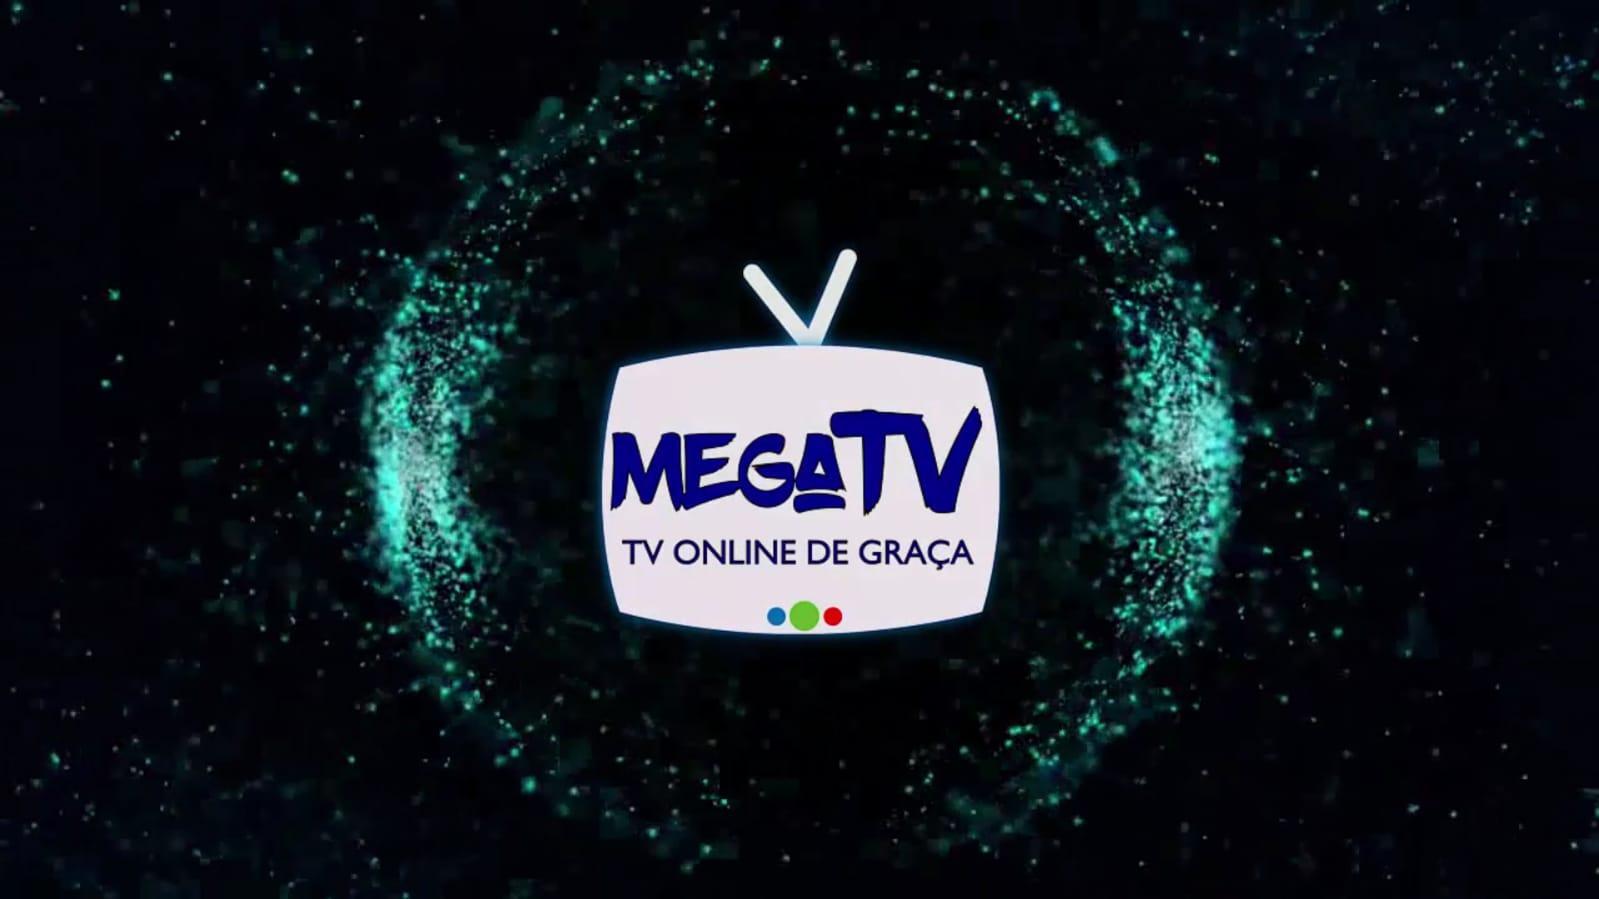 Mega TV Online for Android - APK Download